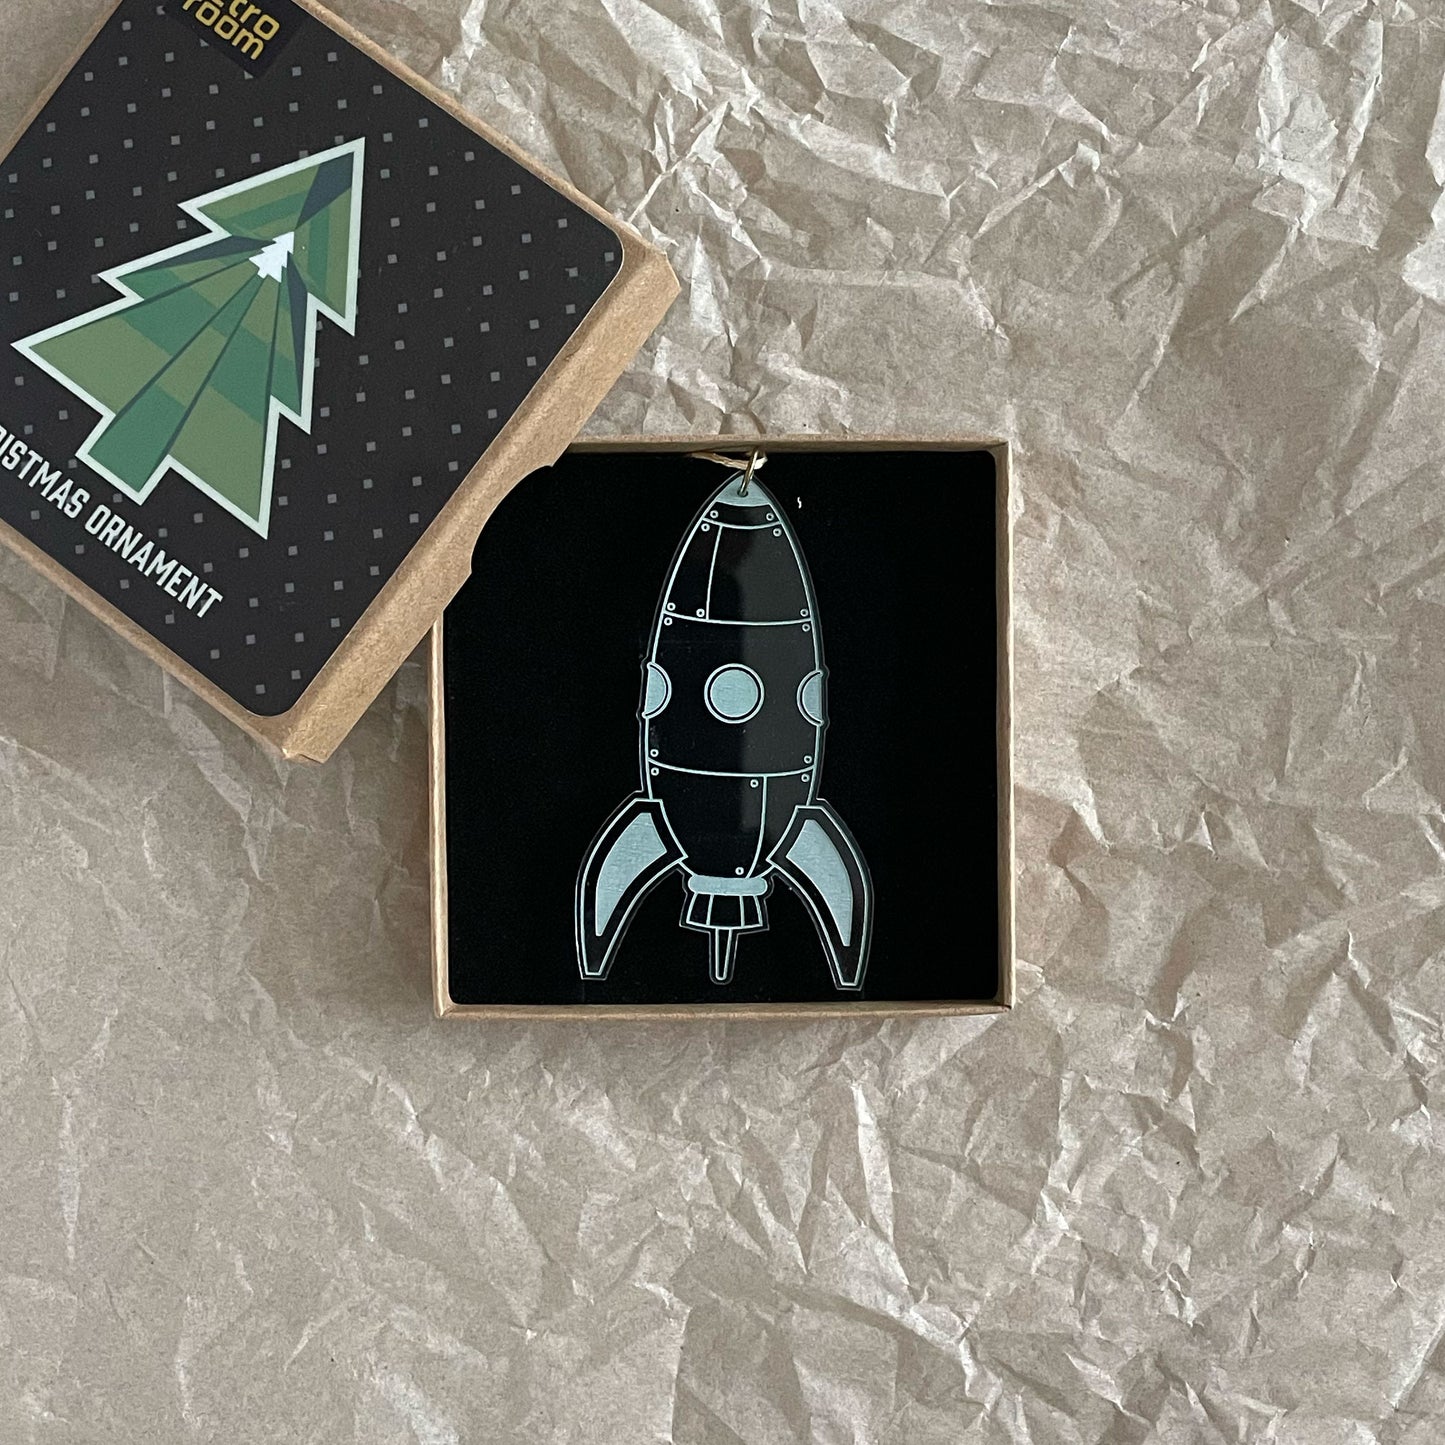 The Apollo - Retro Rocket Holiday Ornament